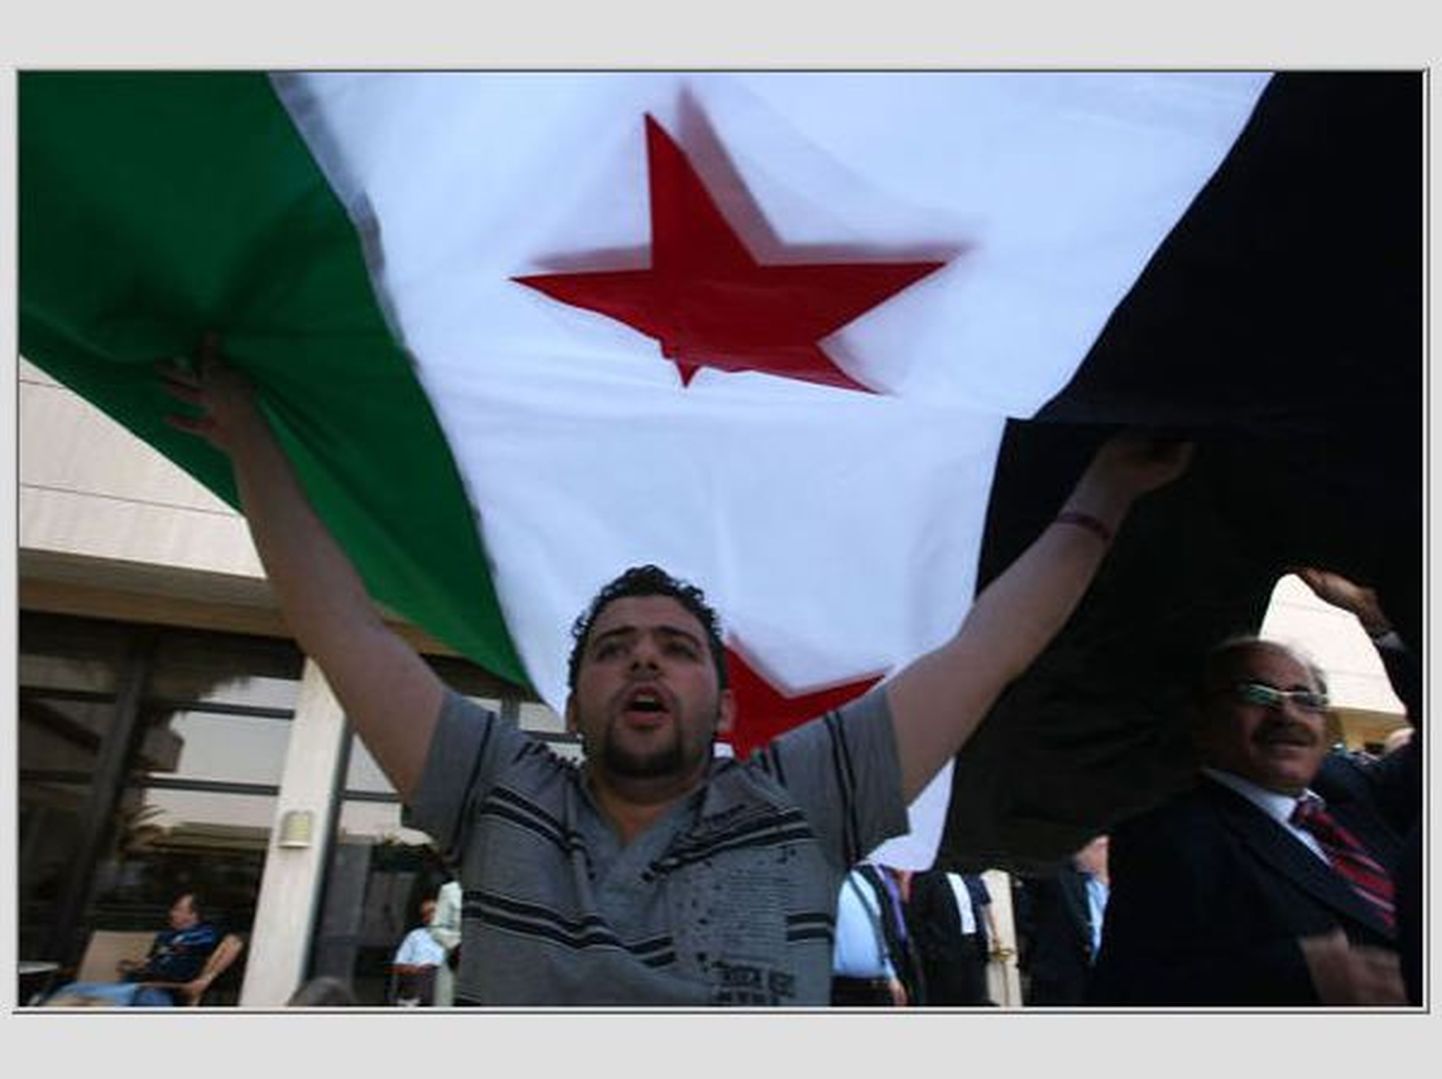 Süüria opositsiooni liige president al-Assadi vastu protestimas